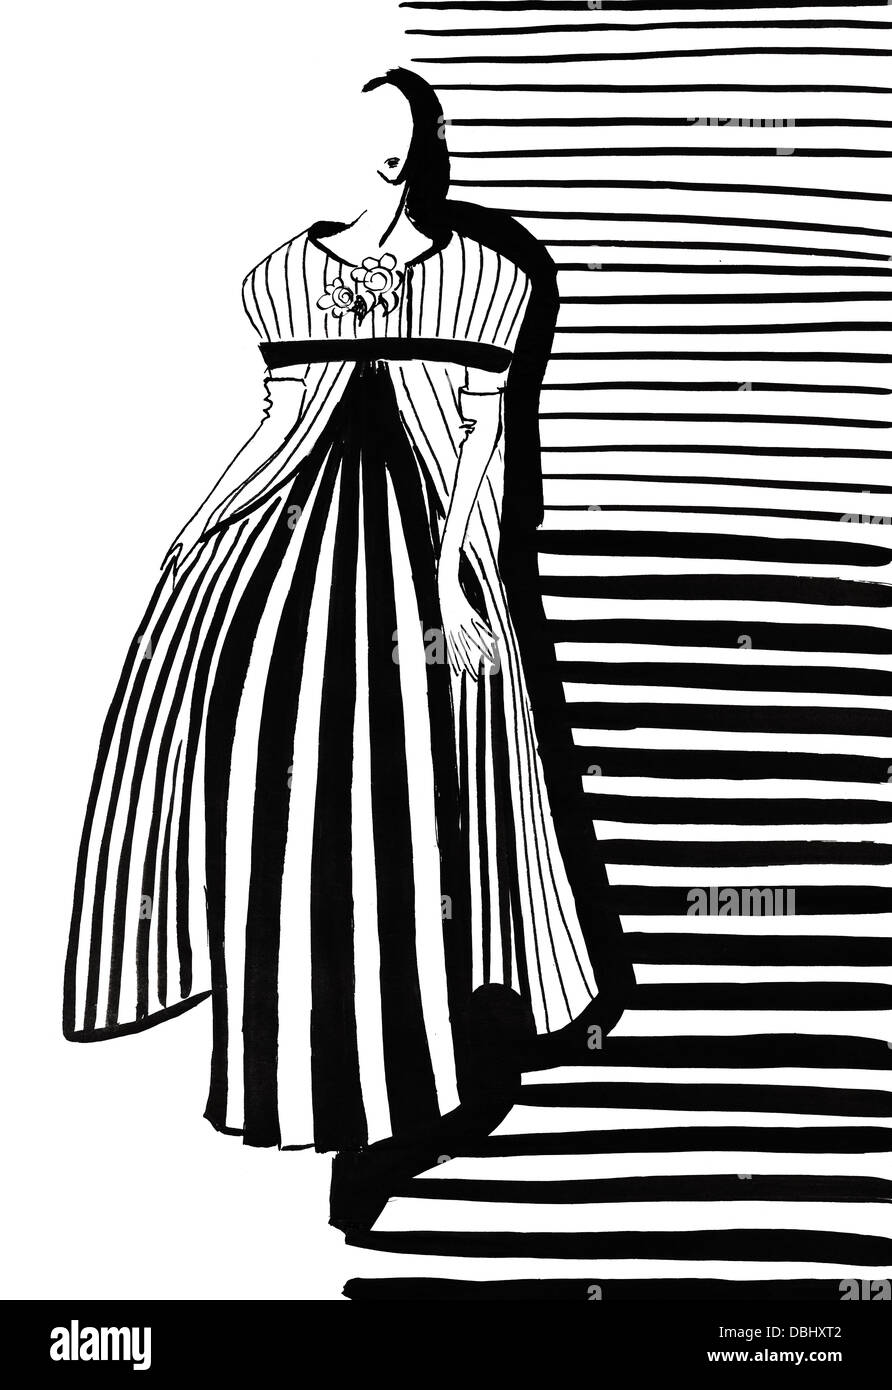 Mode des 20. Jahrhunderts - Frau im grauen Mantel und Kleid mit Plissee in 60 Jahre Stockfoto